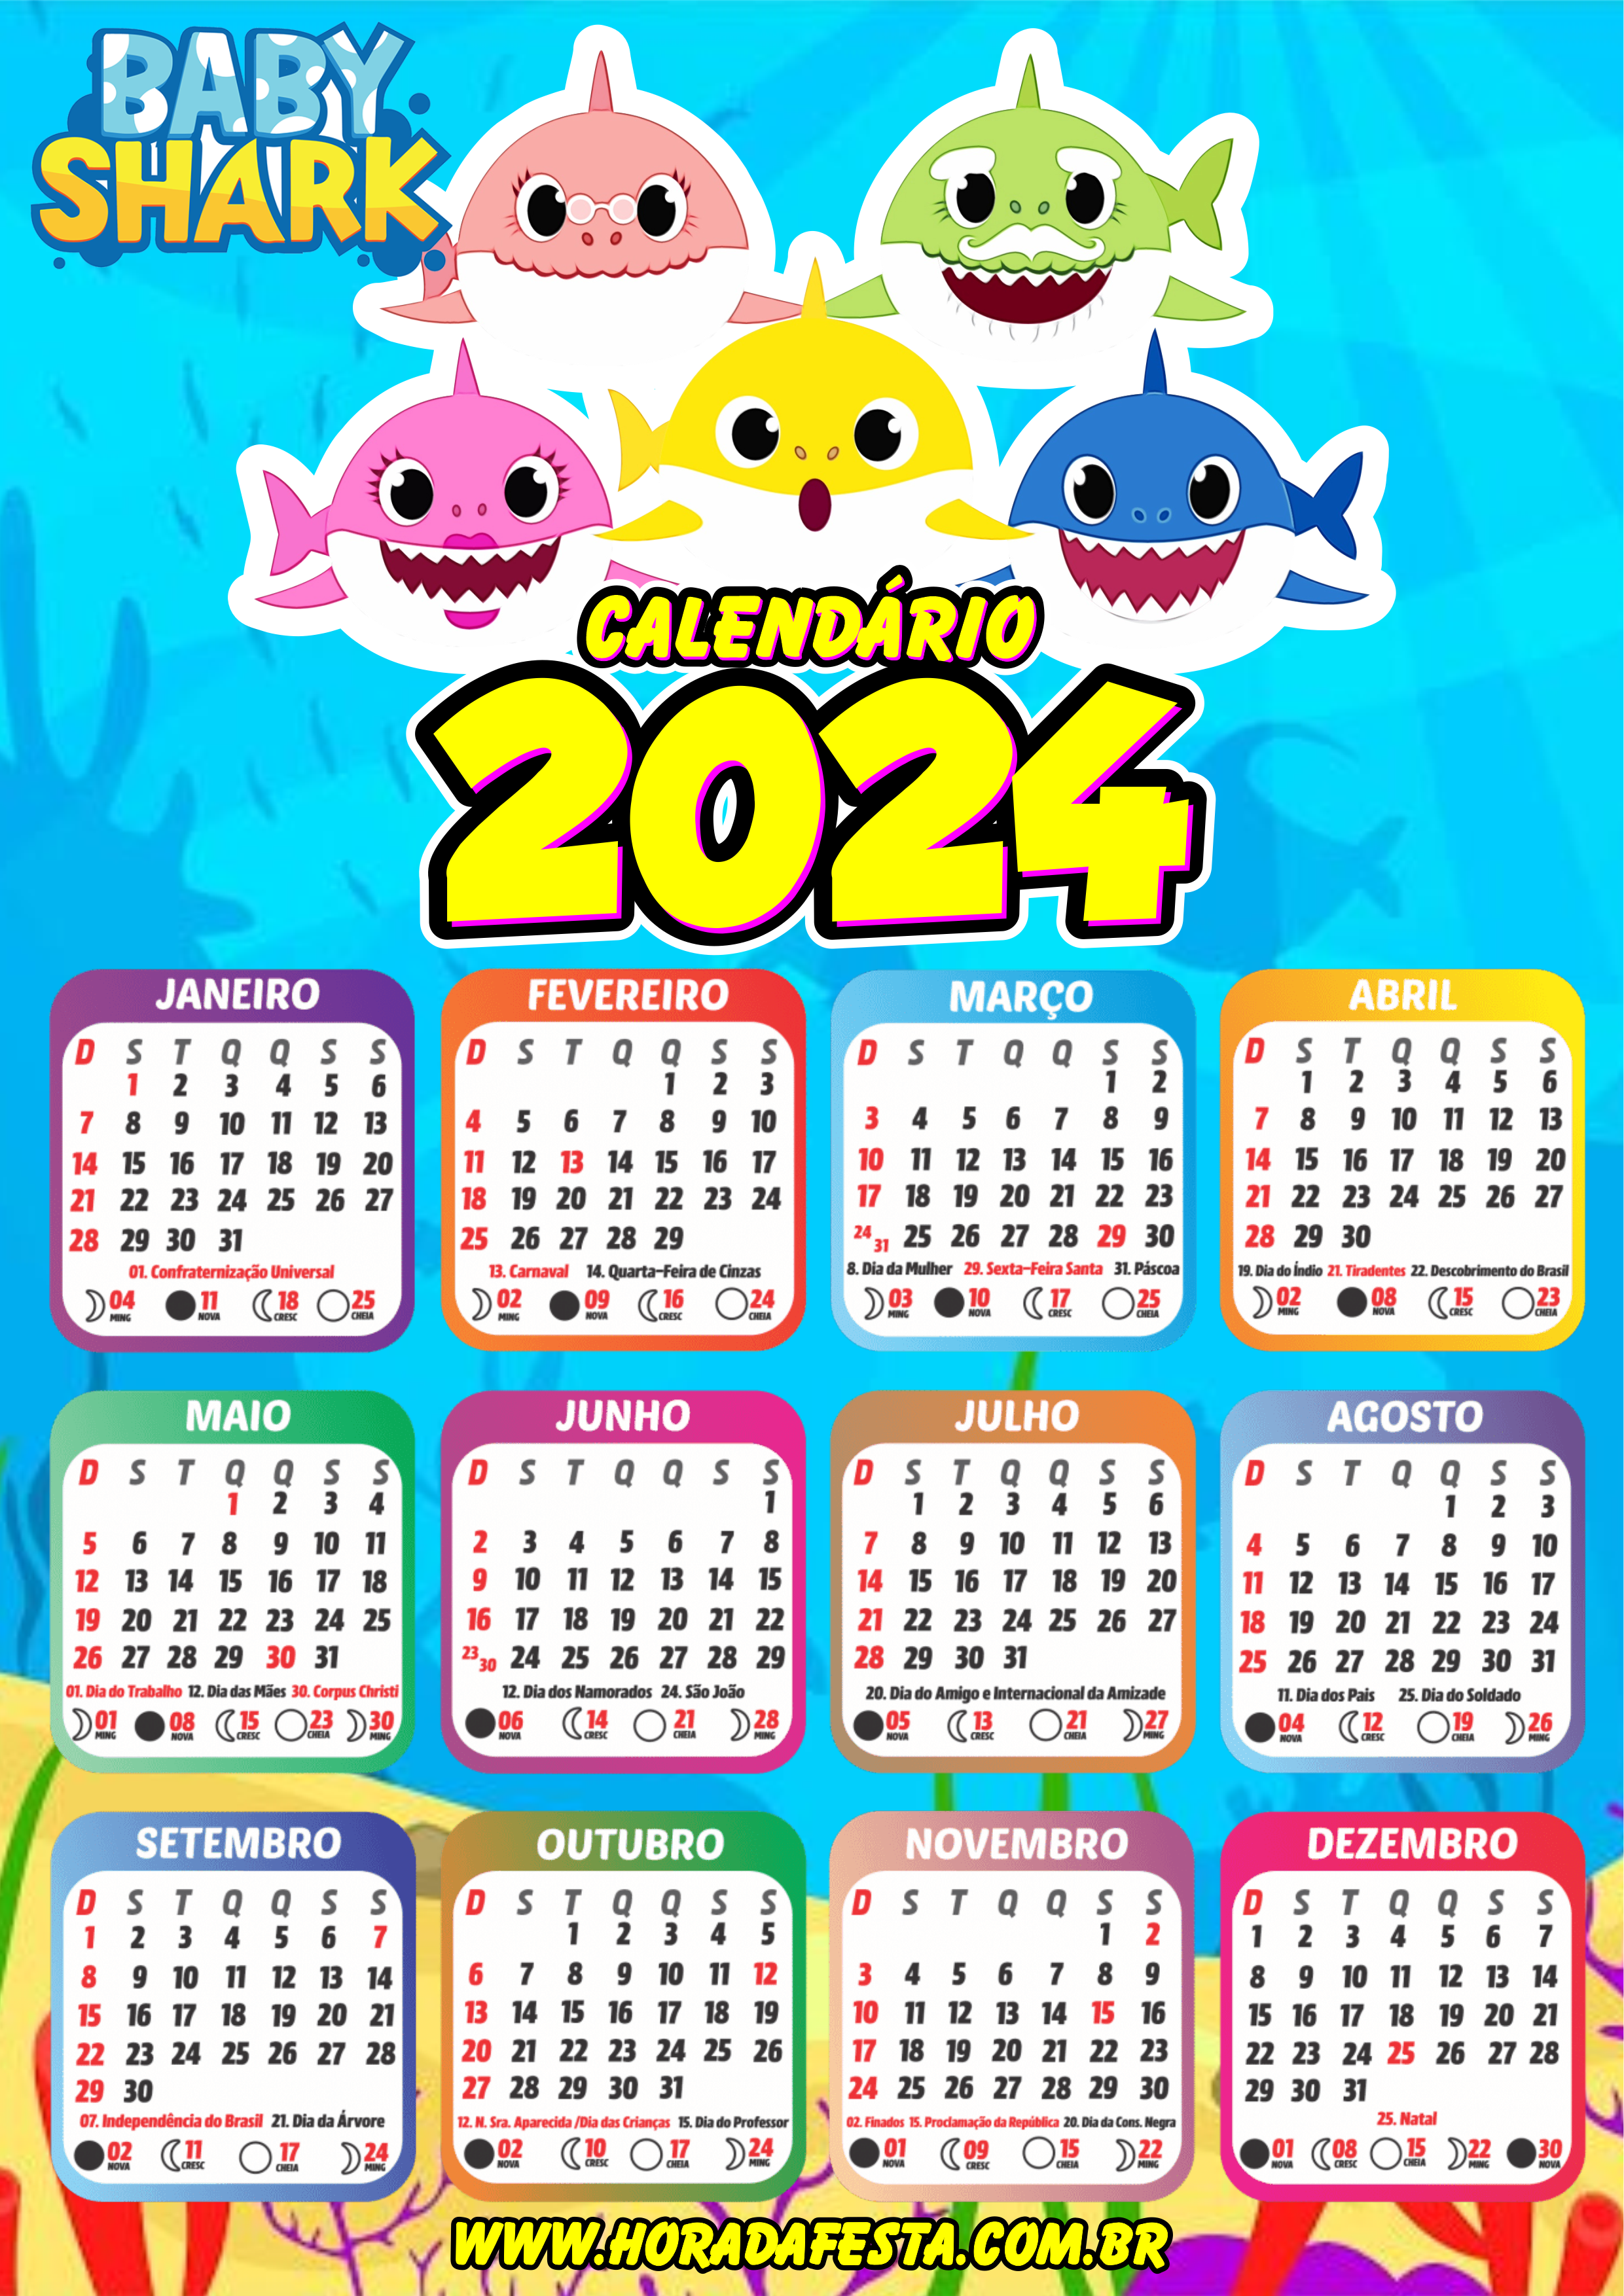 Calendário 2024 Baby Shark desenho infantil personalizado artes gráficas design personagens png